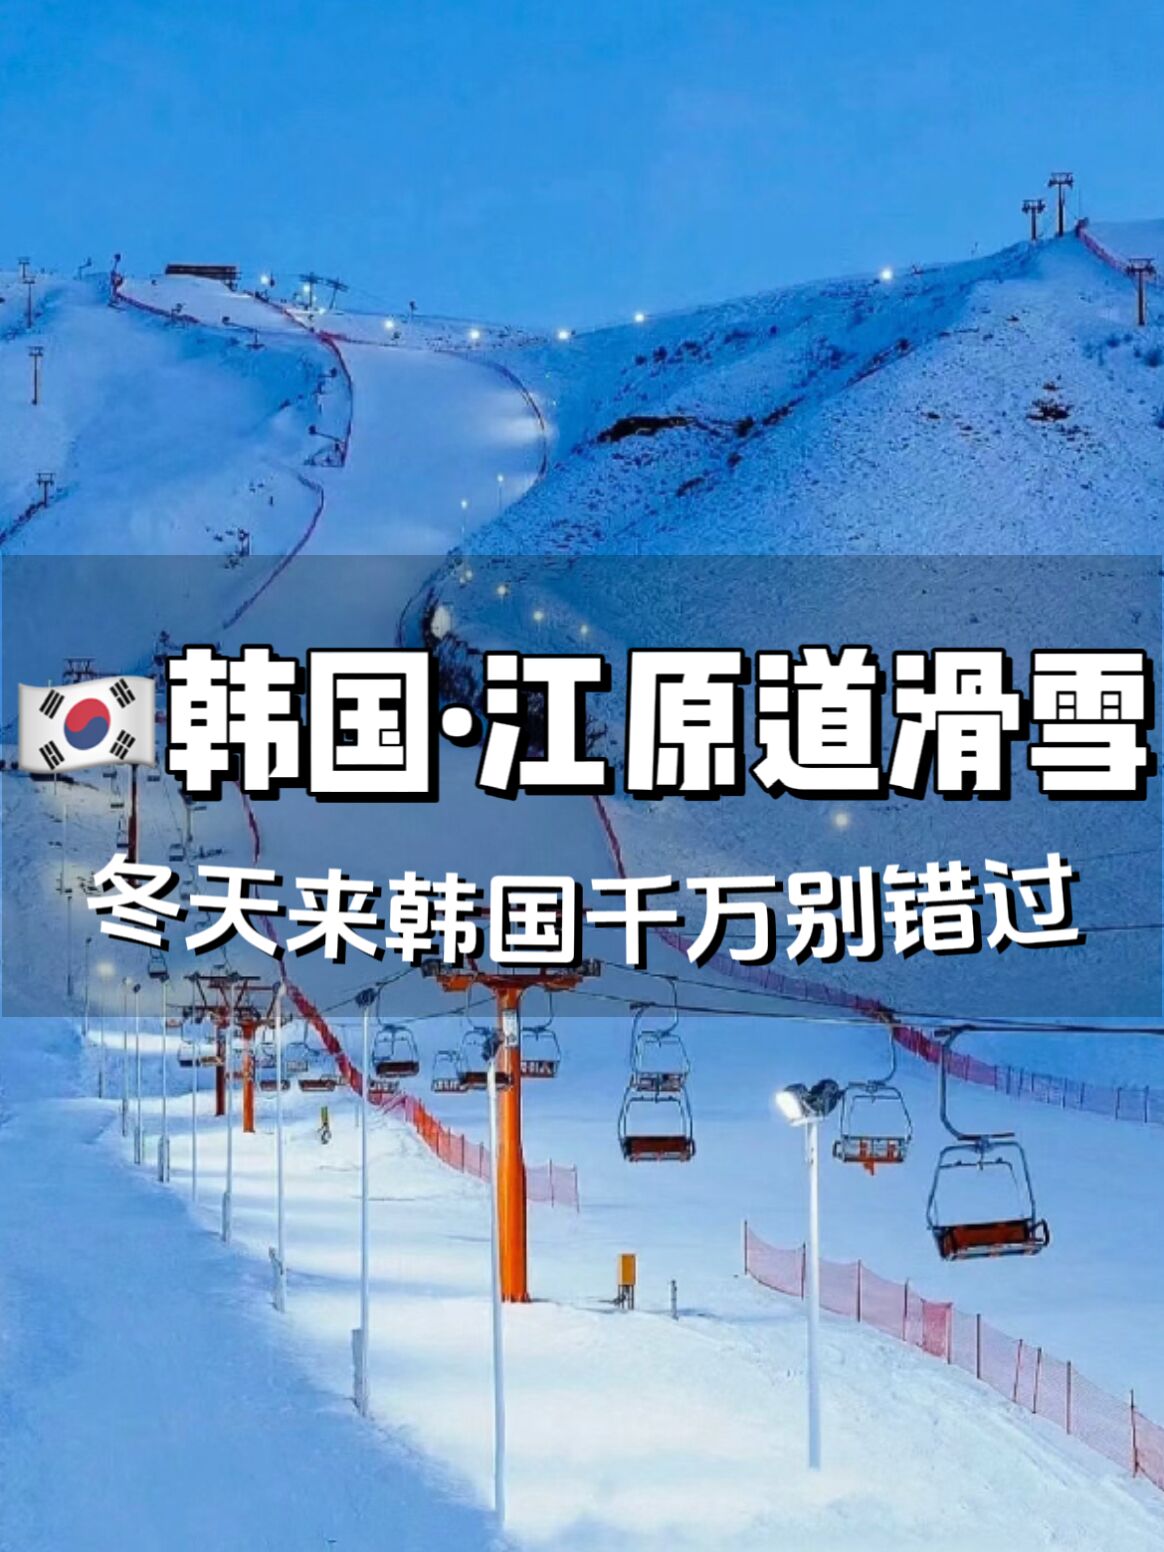 冬天来韩国玩一定要去一次江原道滑雪哦⛷️